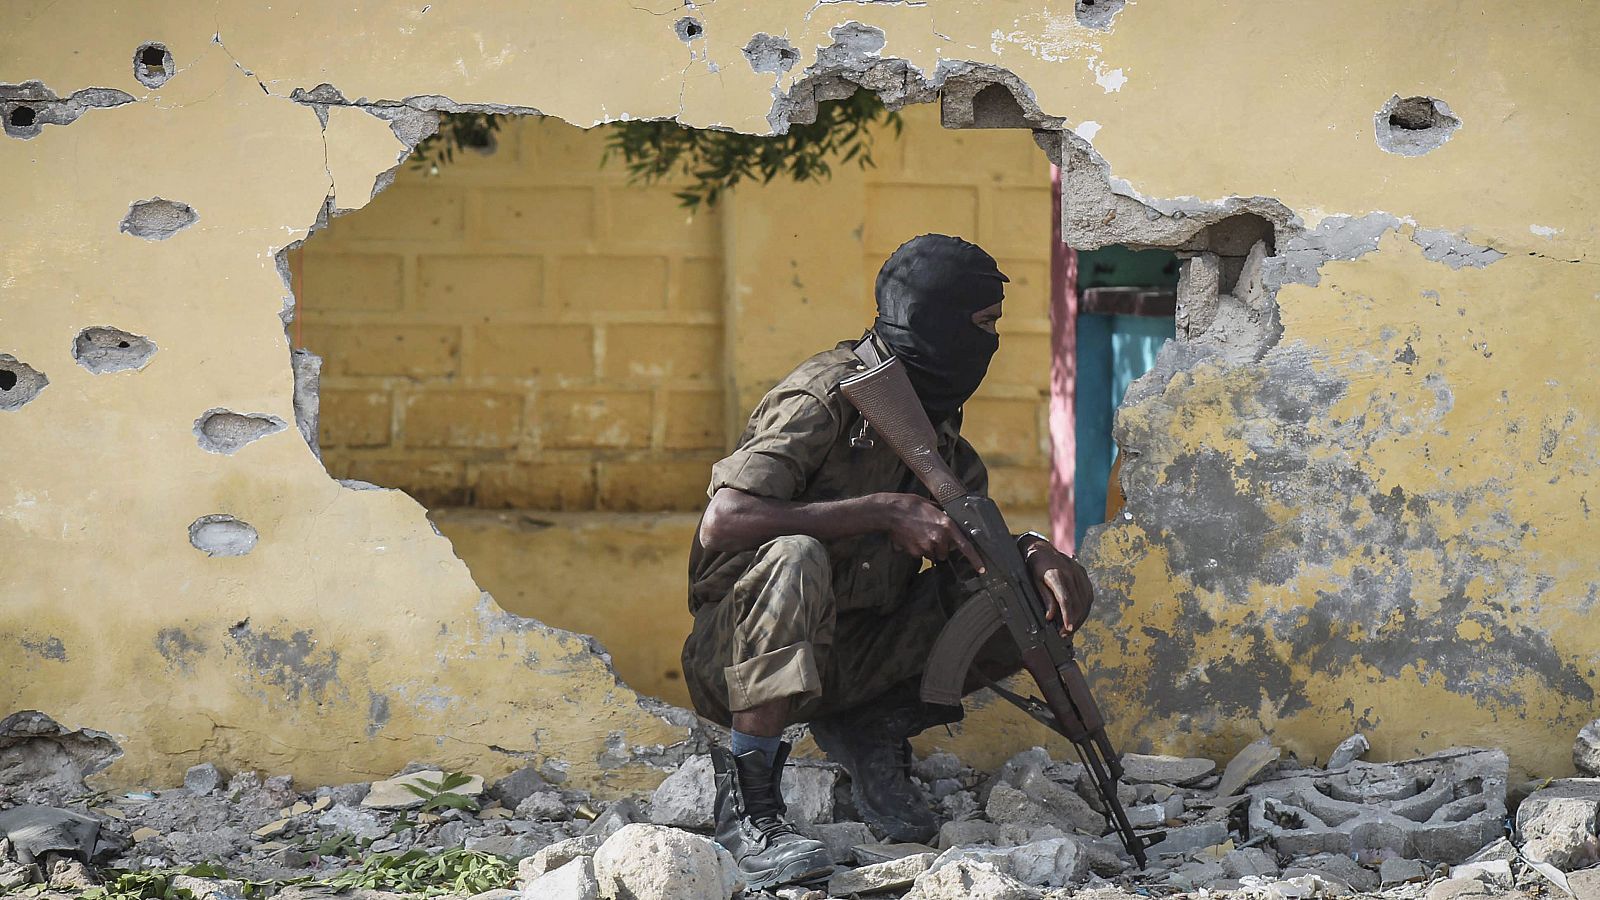 Las bases militares de la UA en Somalia han sido objetivo de los terroristas en varias ocasiones en los últimos meses.